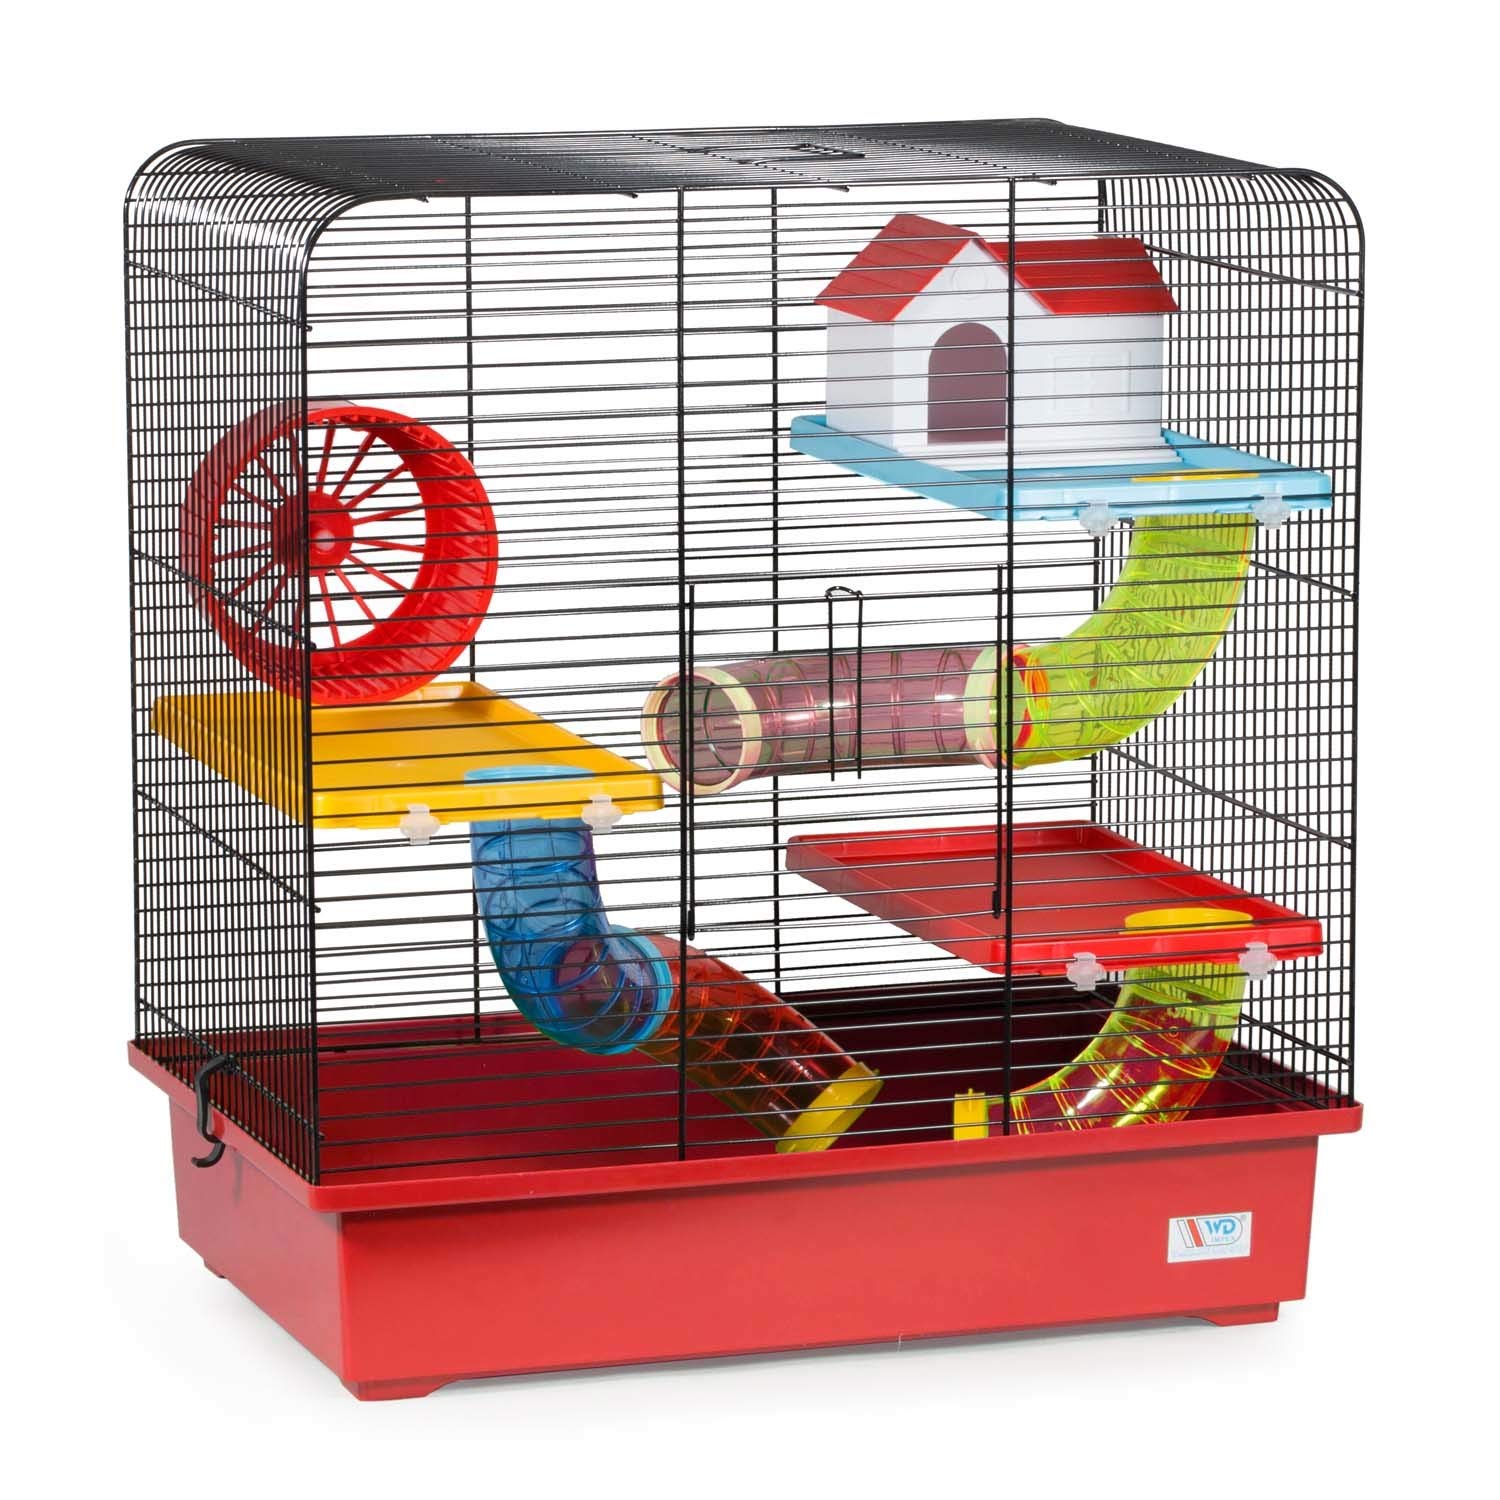 decorwelt Hamsterkäfige Rot Außenmaße 49x32,5x52,5 Nagerkäfig Hamster Plastik Kleintier Käfig mit Zubehör